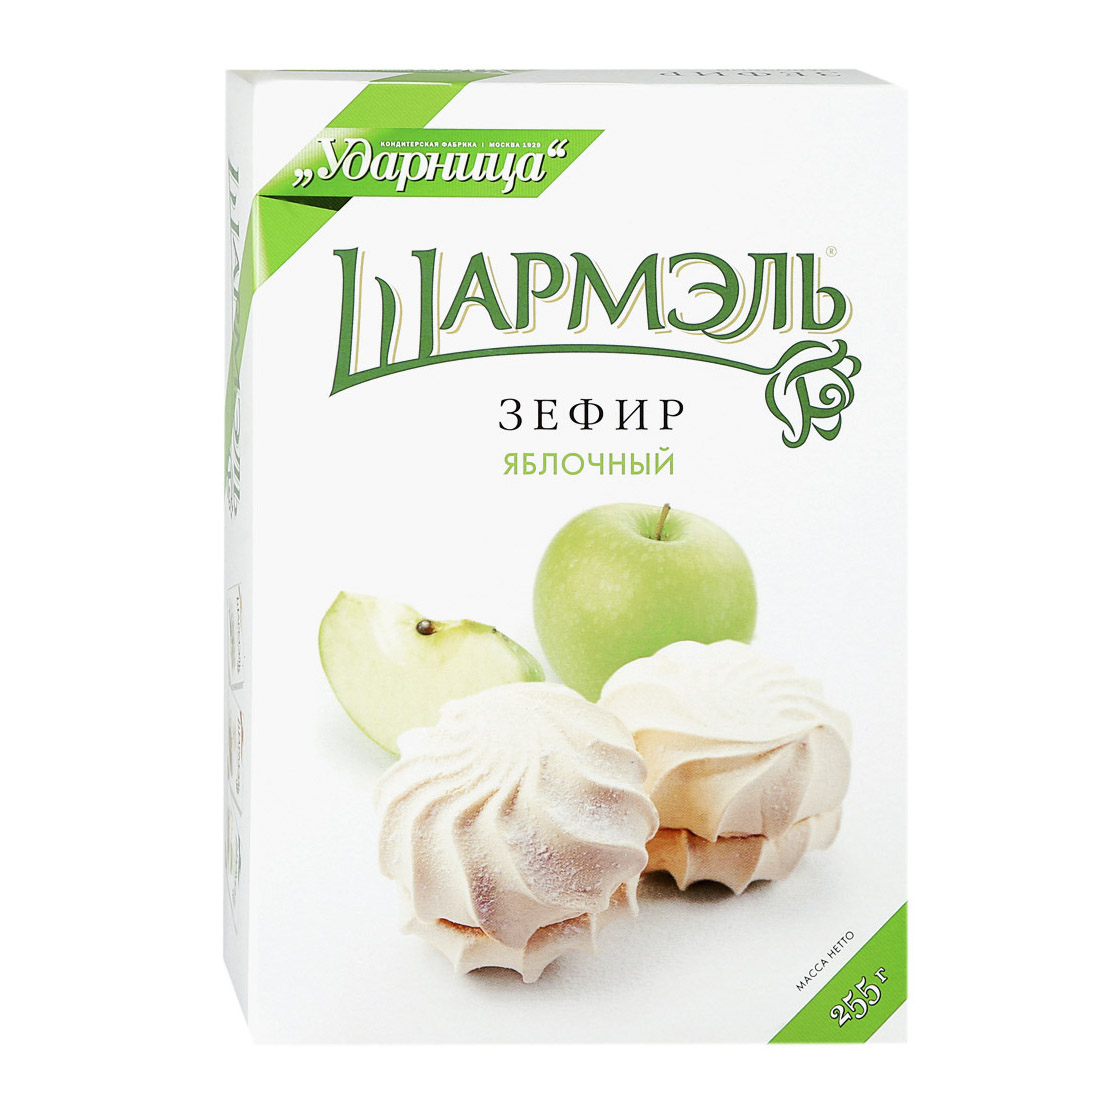 Зефир Шармэль яблочный 255 г зефир яблочный нева frutoteka 150 г